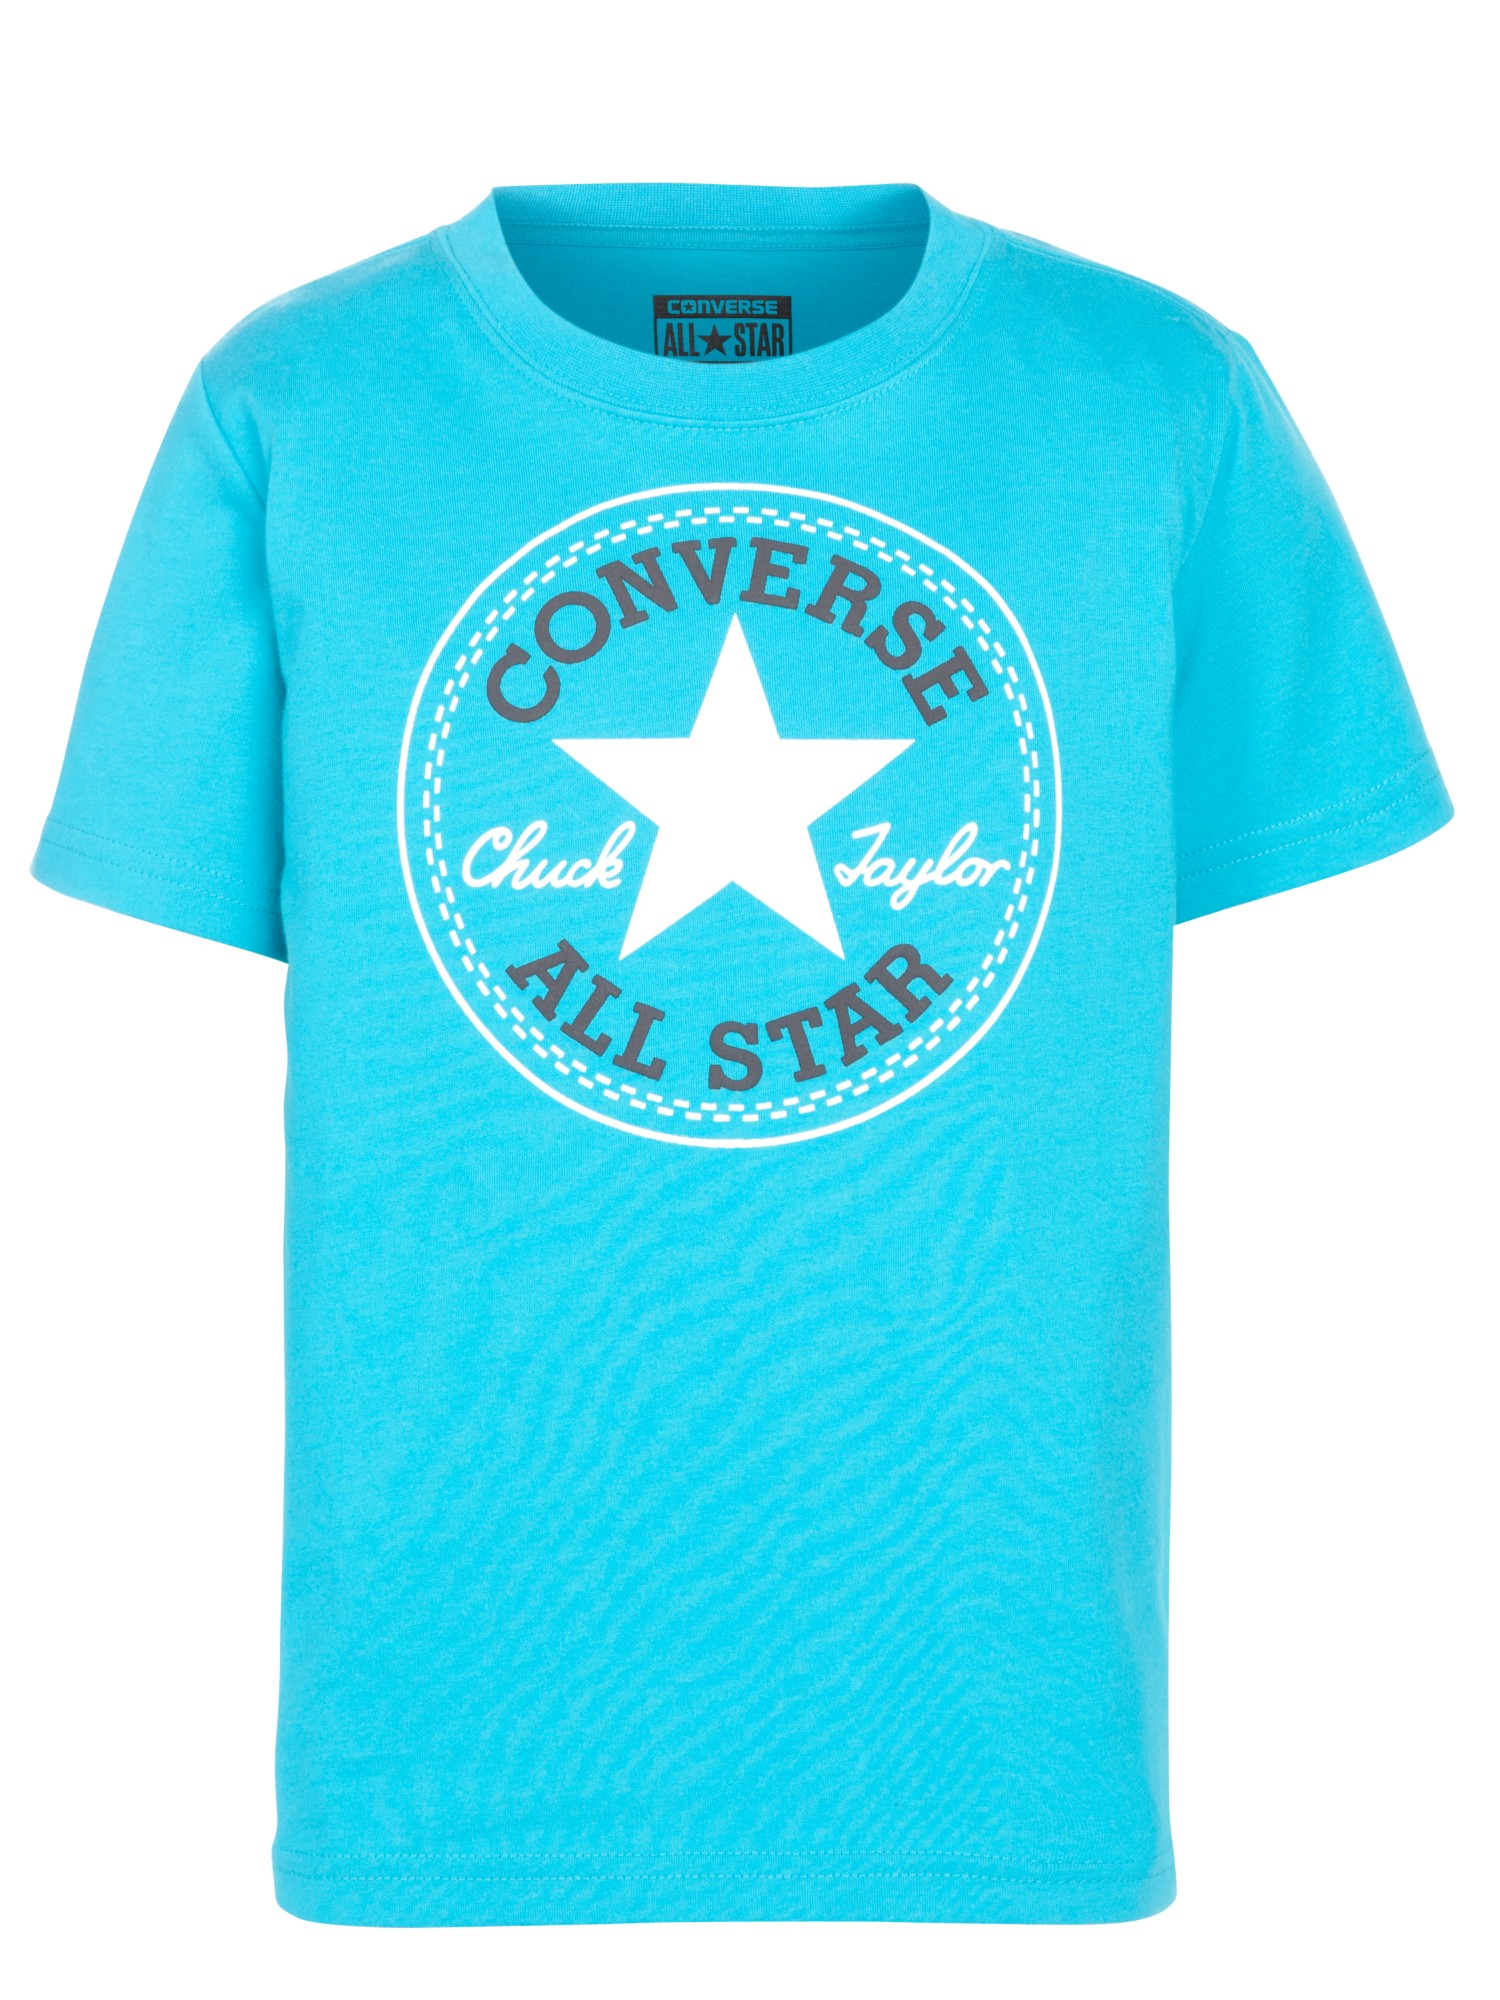 blue converse t shirt